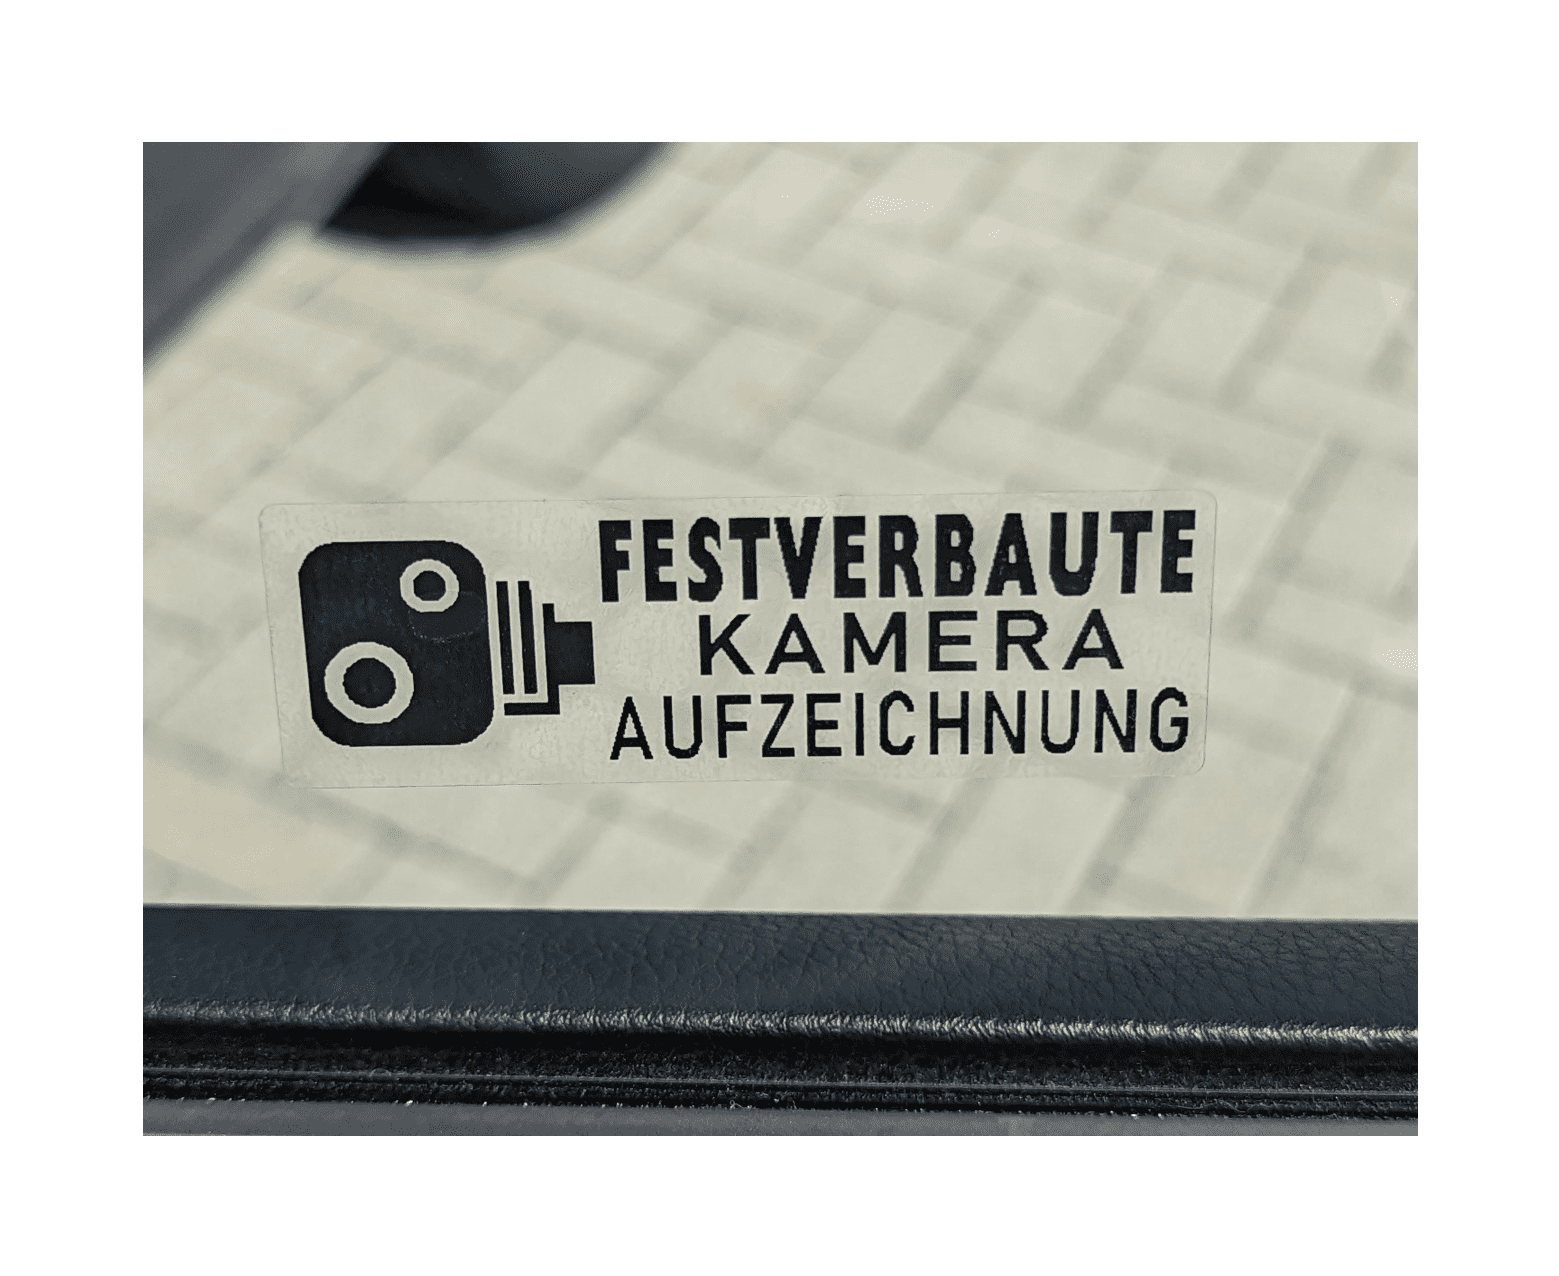 Autosticker Festverbaute Kamera Aufzeichnung schwarz- 76x25mm - Fensterinnenseite